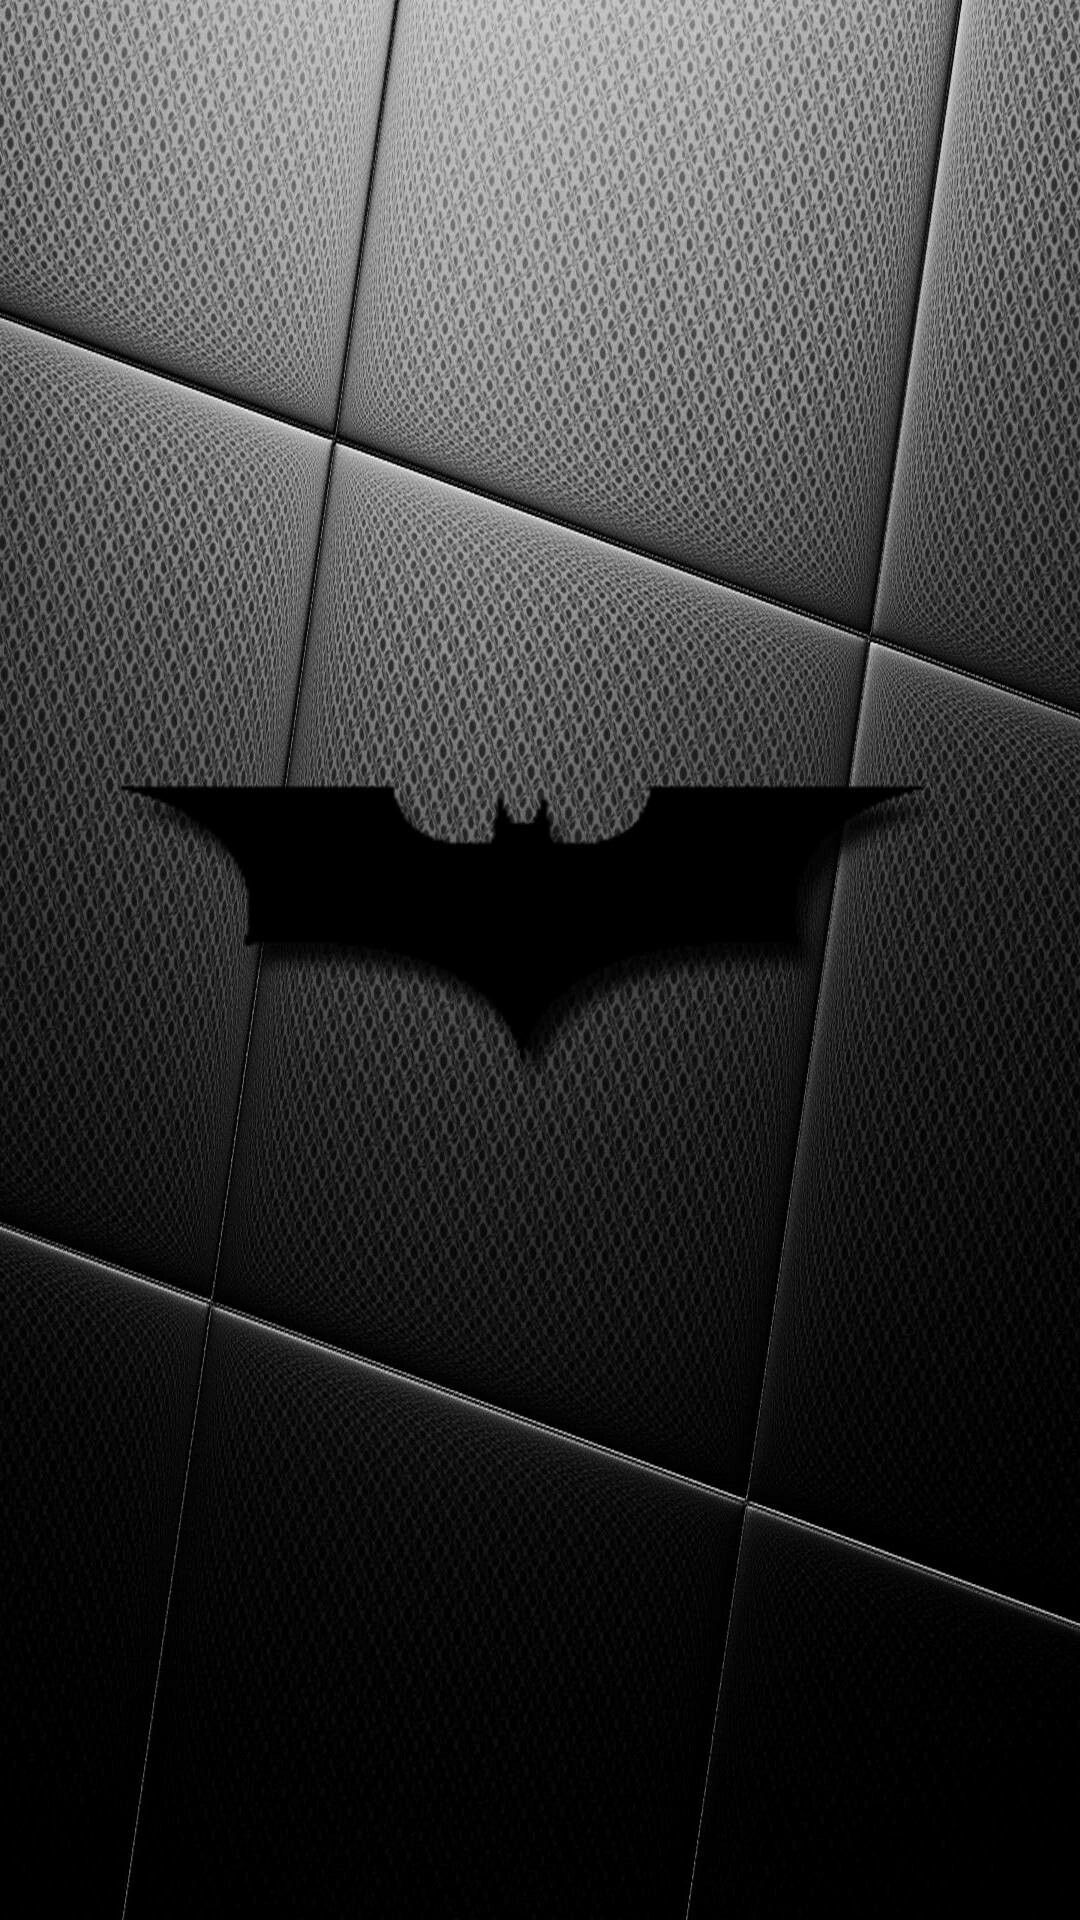 Batarang. Batman cartoon, Batman symbol, Batman logo